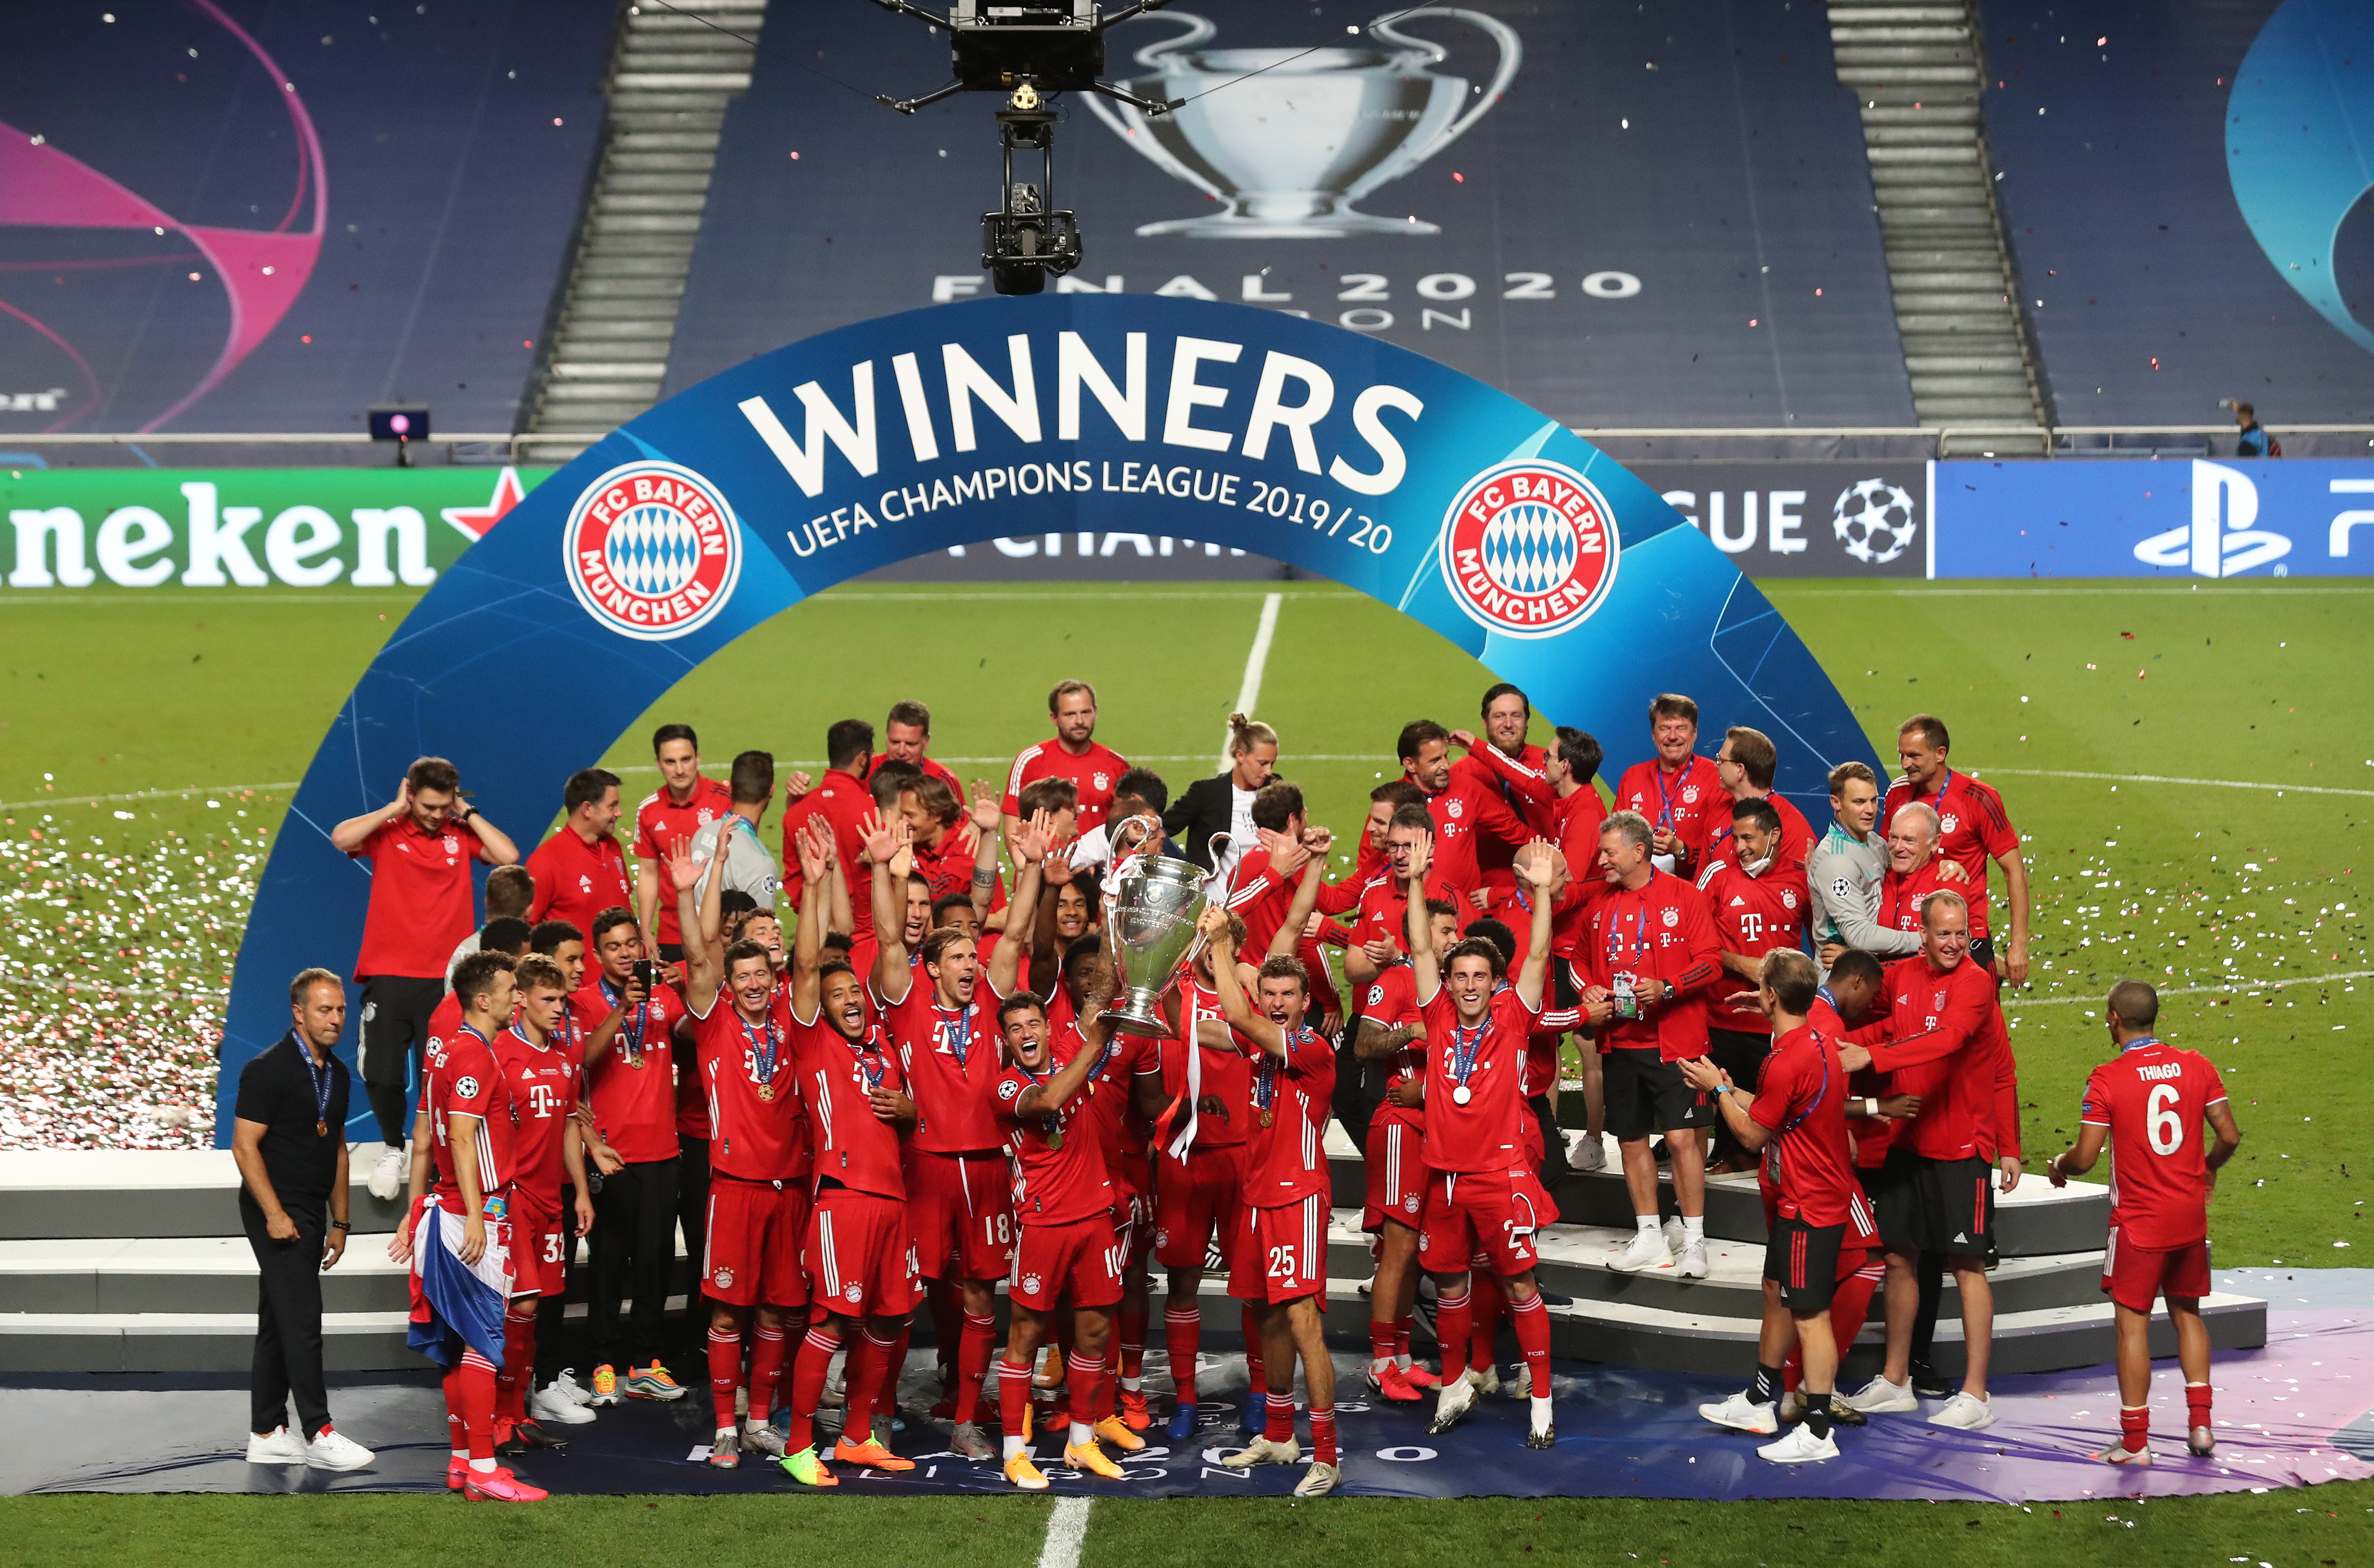 Dublul câștigător al trofeului UEFA Champions League cu Bayern Munchen părăsește gruparea bavareză după opt ani